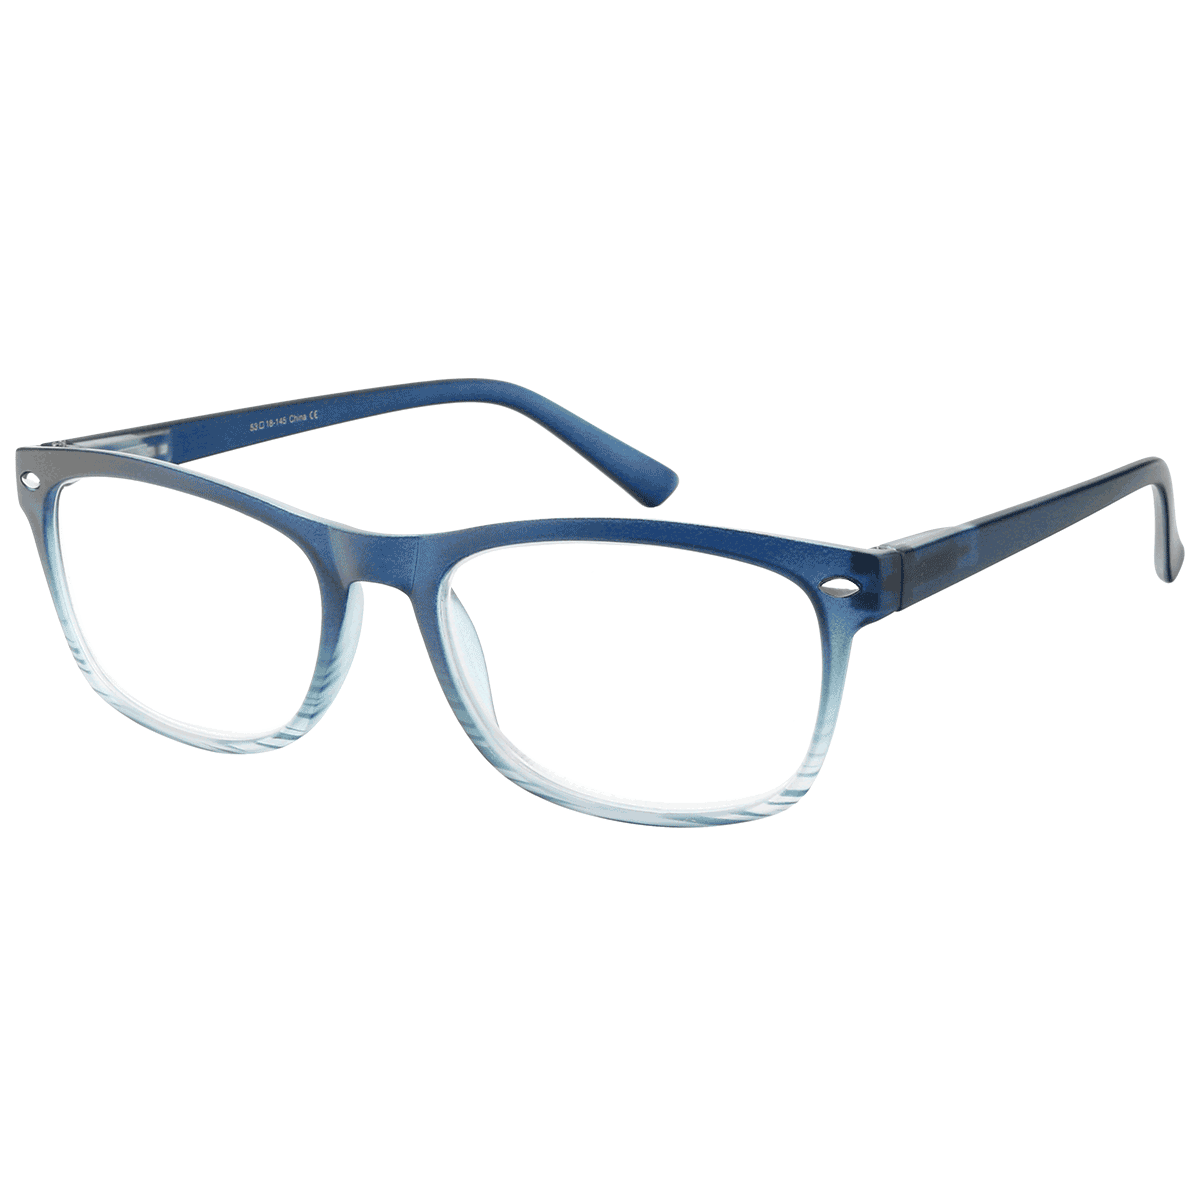 Bias - Square Blue Reading Glasses for Men & Women